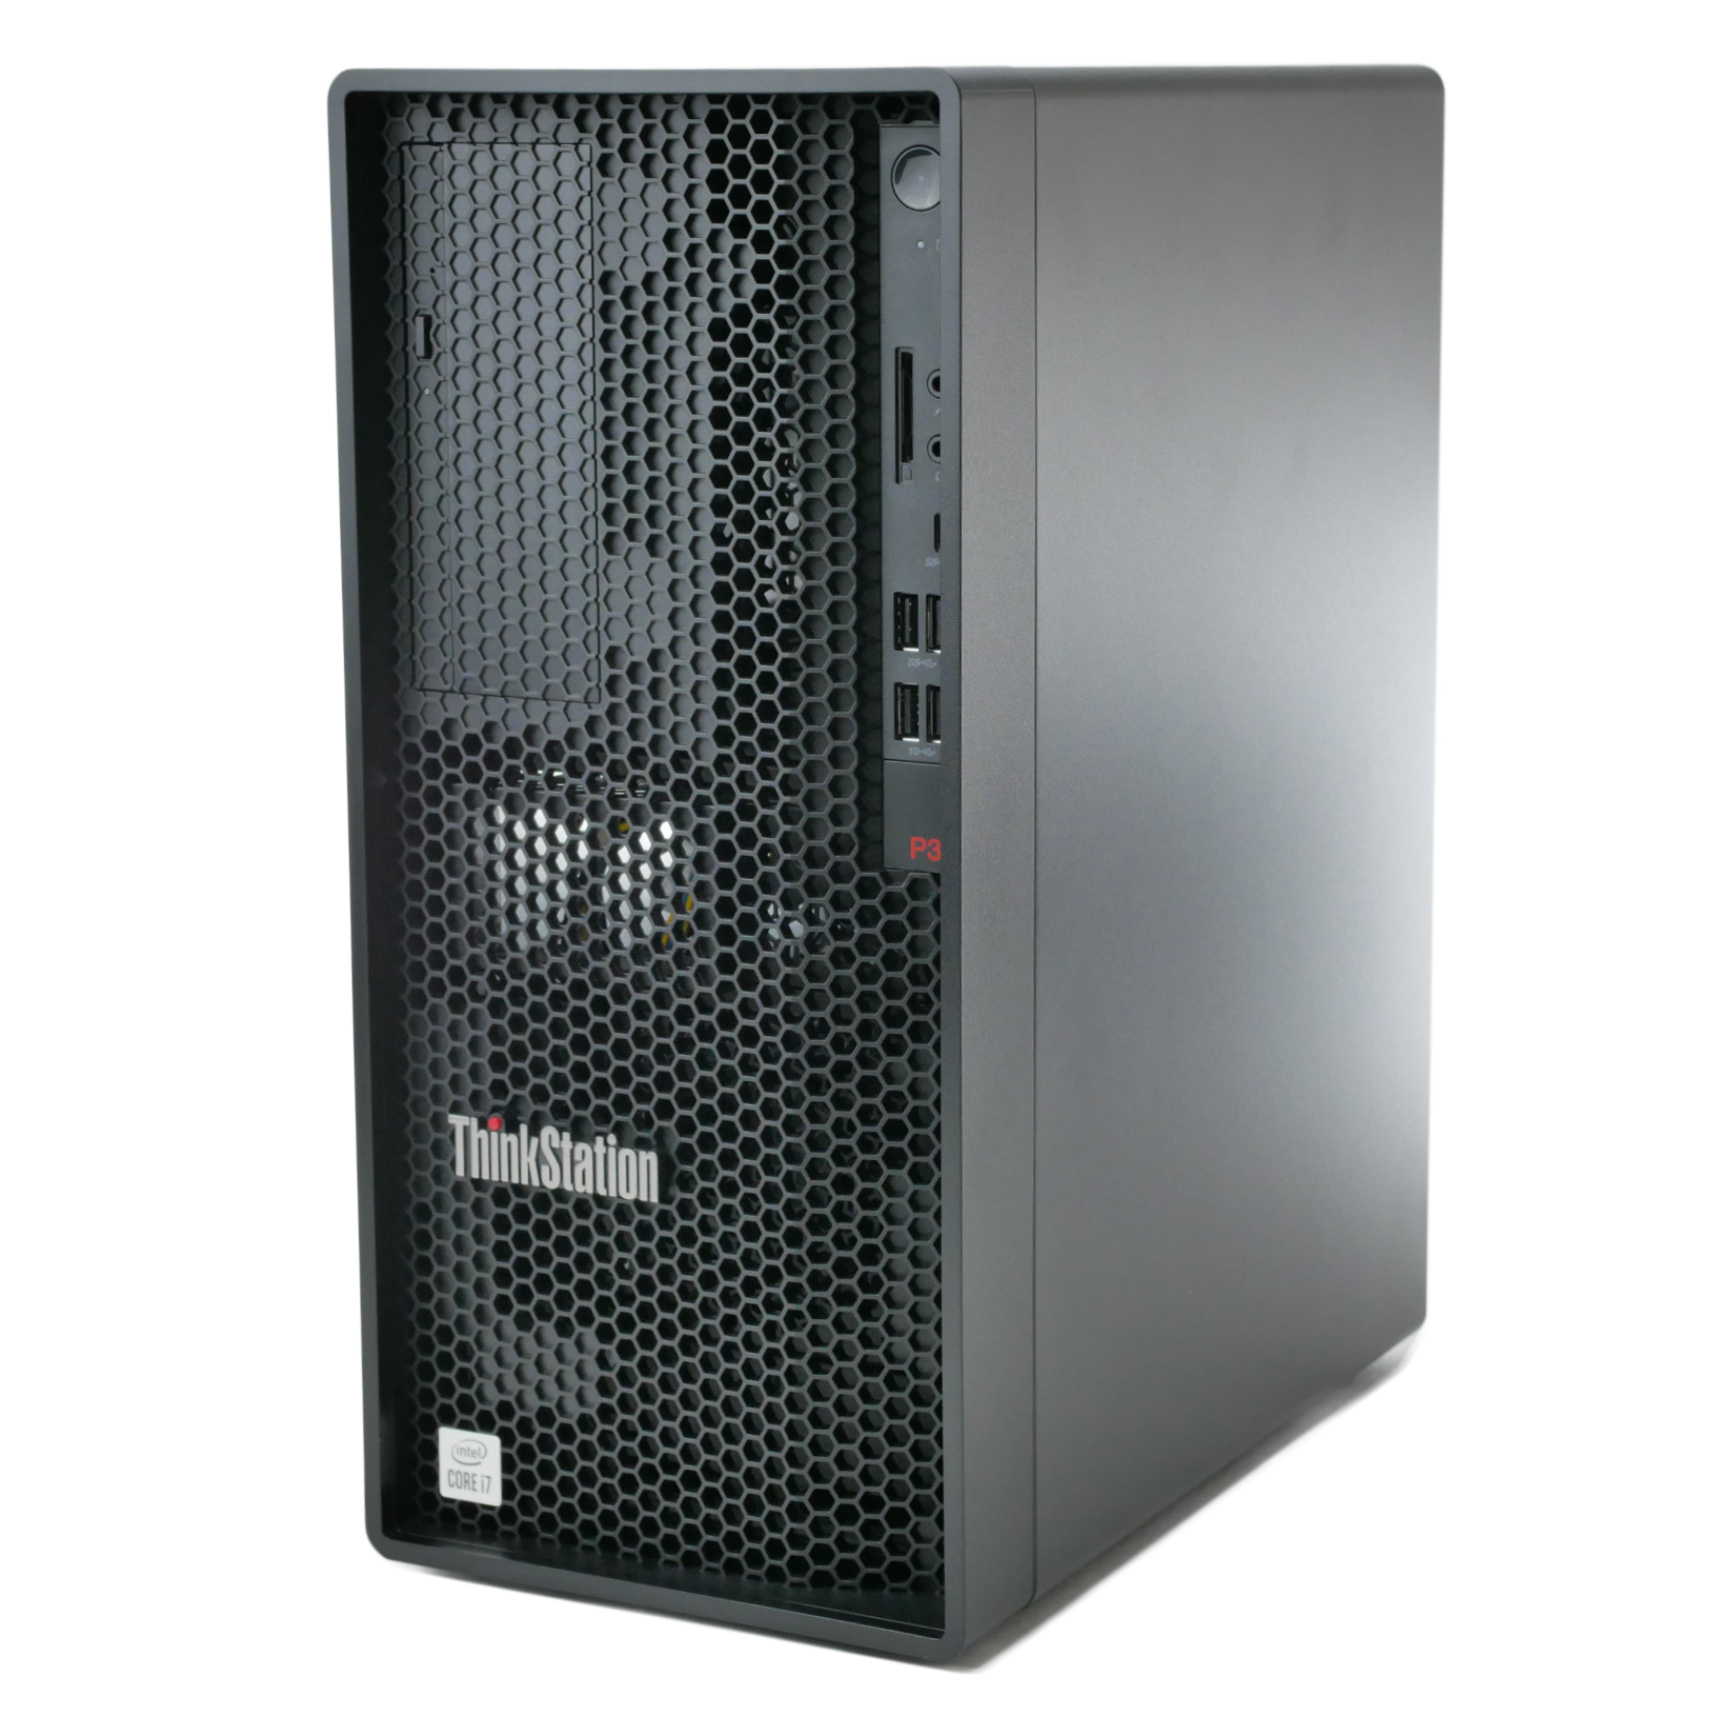 Lenovo ThinkStation P340 Tower I7-10700 2.9GHz 16Gb RAM 512 Gb NVMe 30DH00JAUS - Click Image to Close